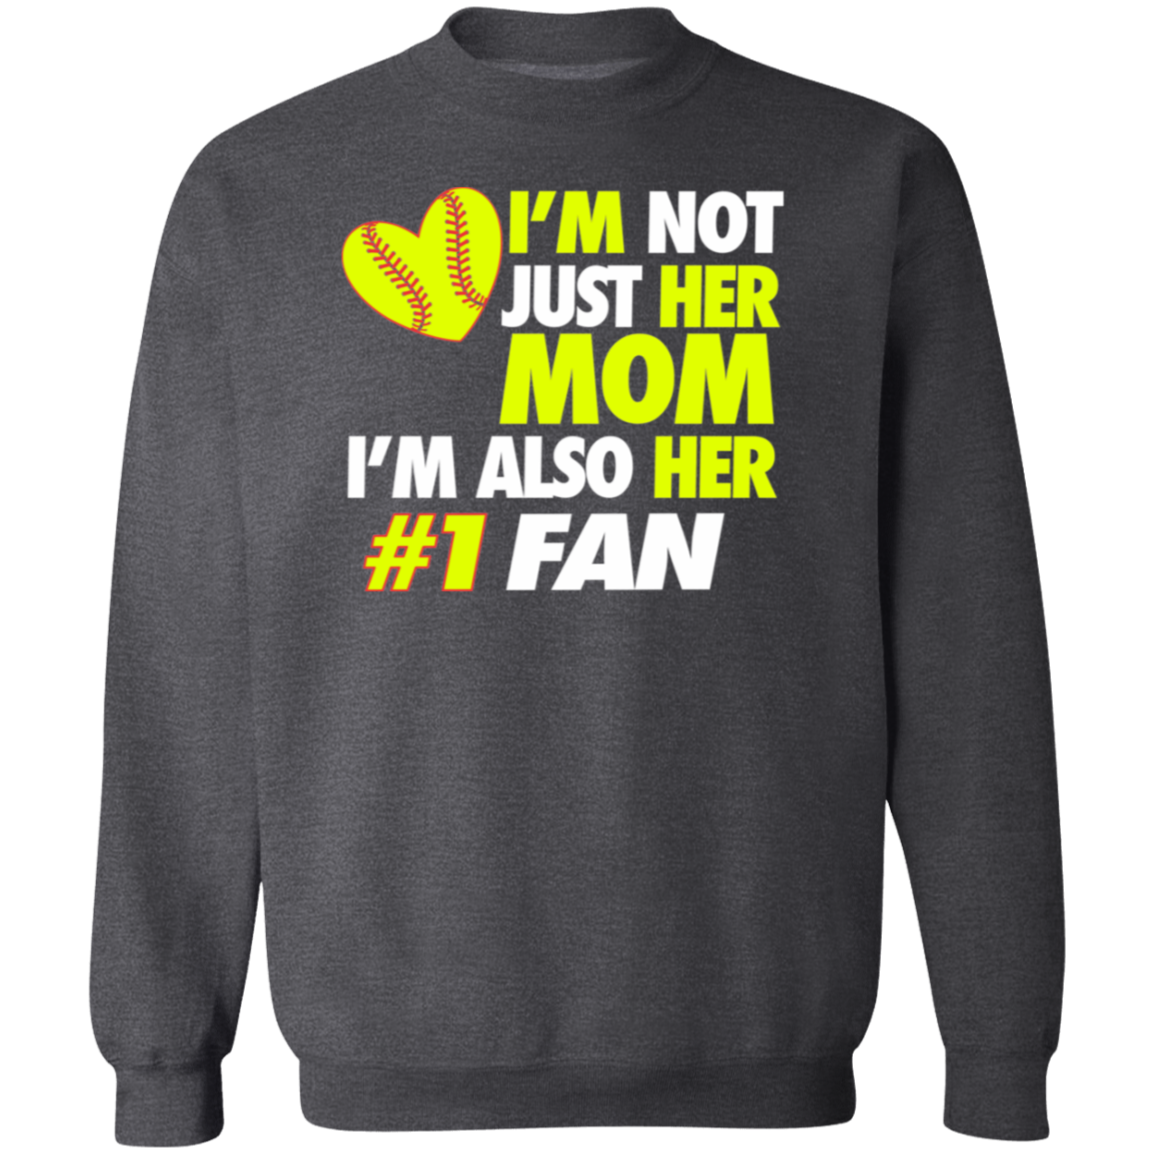 I'm not just her Mom Softball Premium Crew Neck Sweatshirt